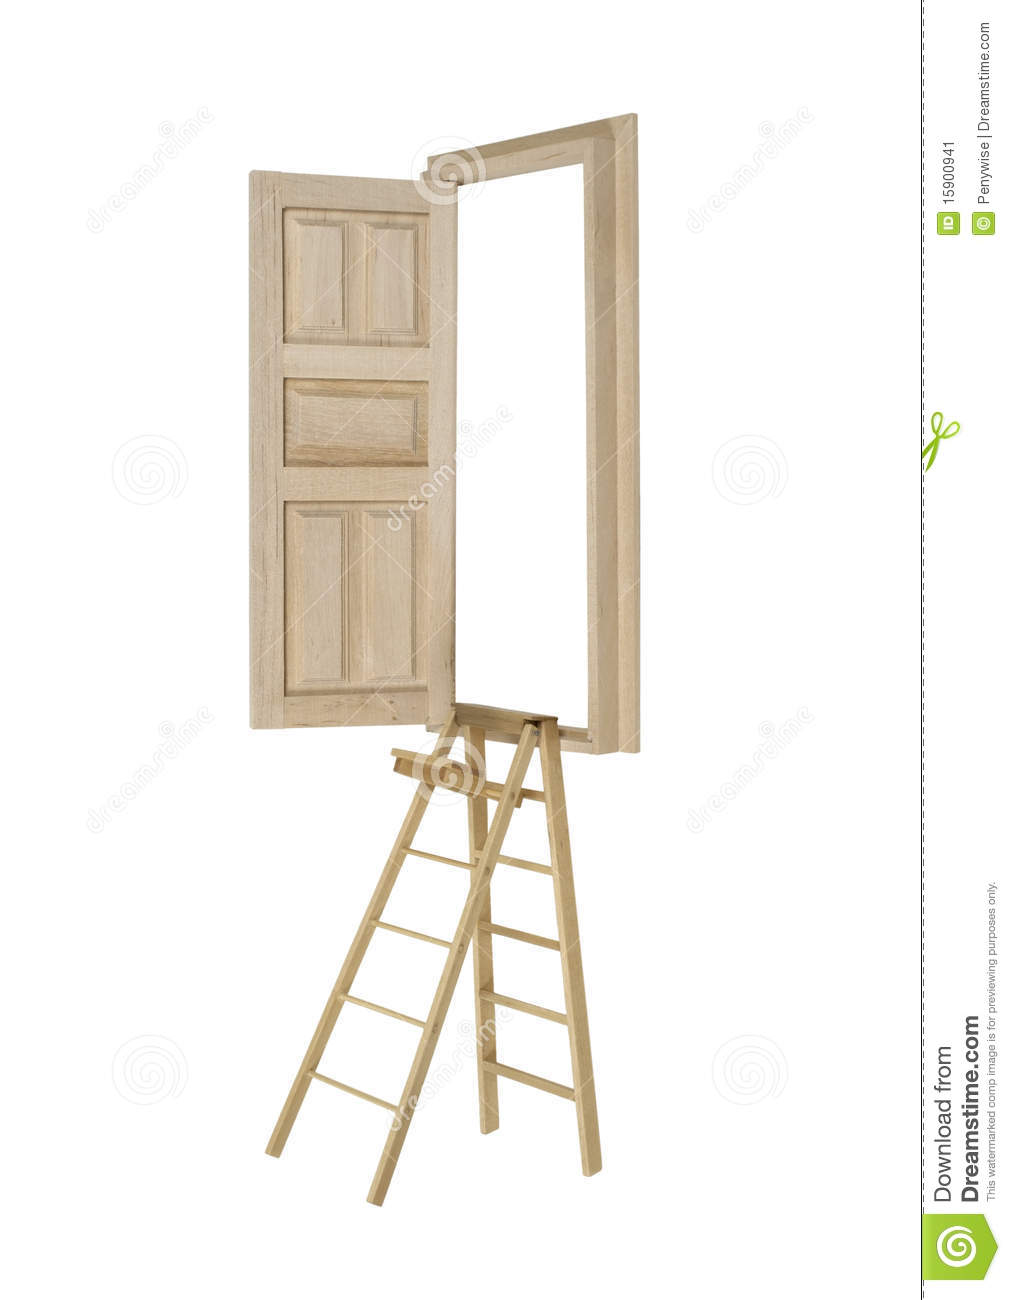 Working Toward Goals Shown By A Ladder Reaching Up Toward An Open Door    